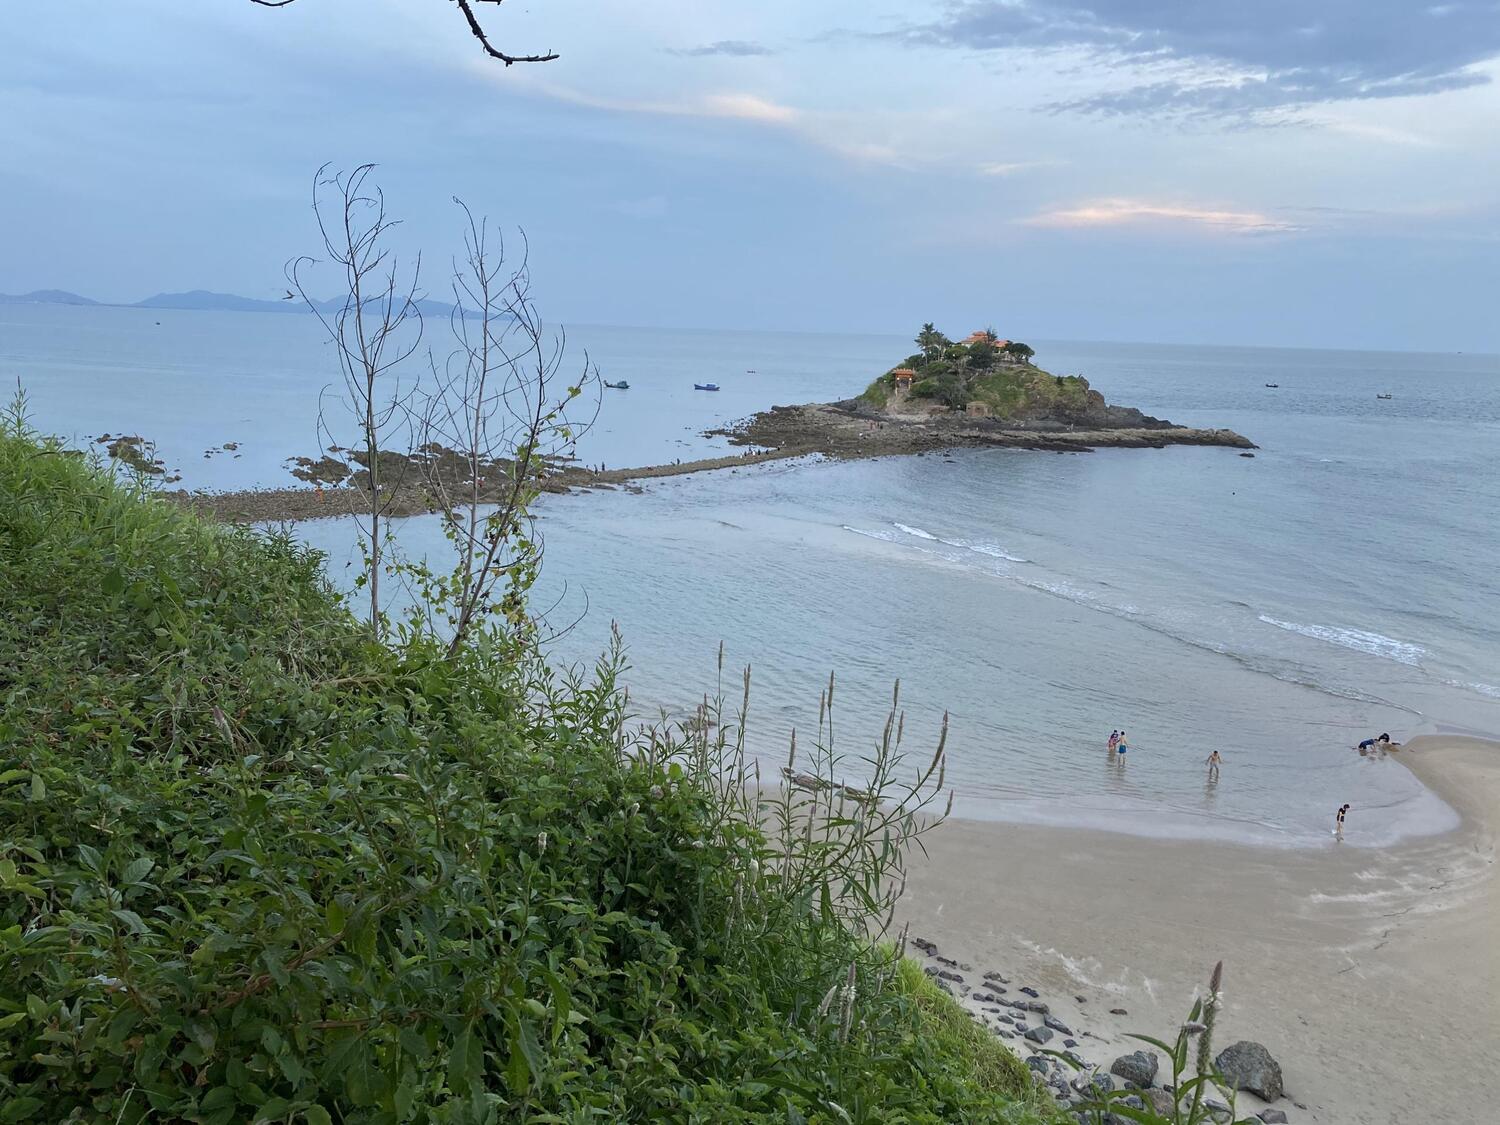 Bãi Vọng Nguyệt Vũng Tàu - Ngây ngất với vẻ đẹp hiền hòa của vùng biển vắng 2